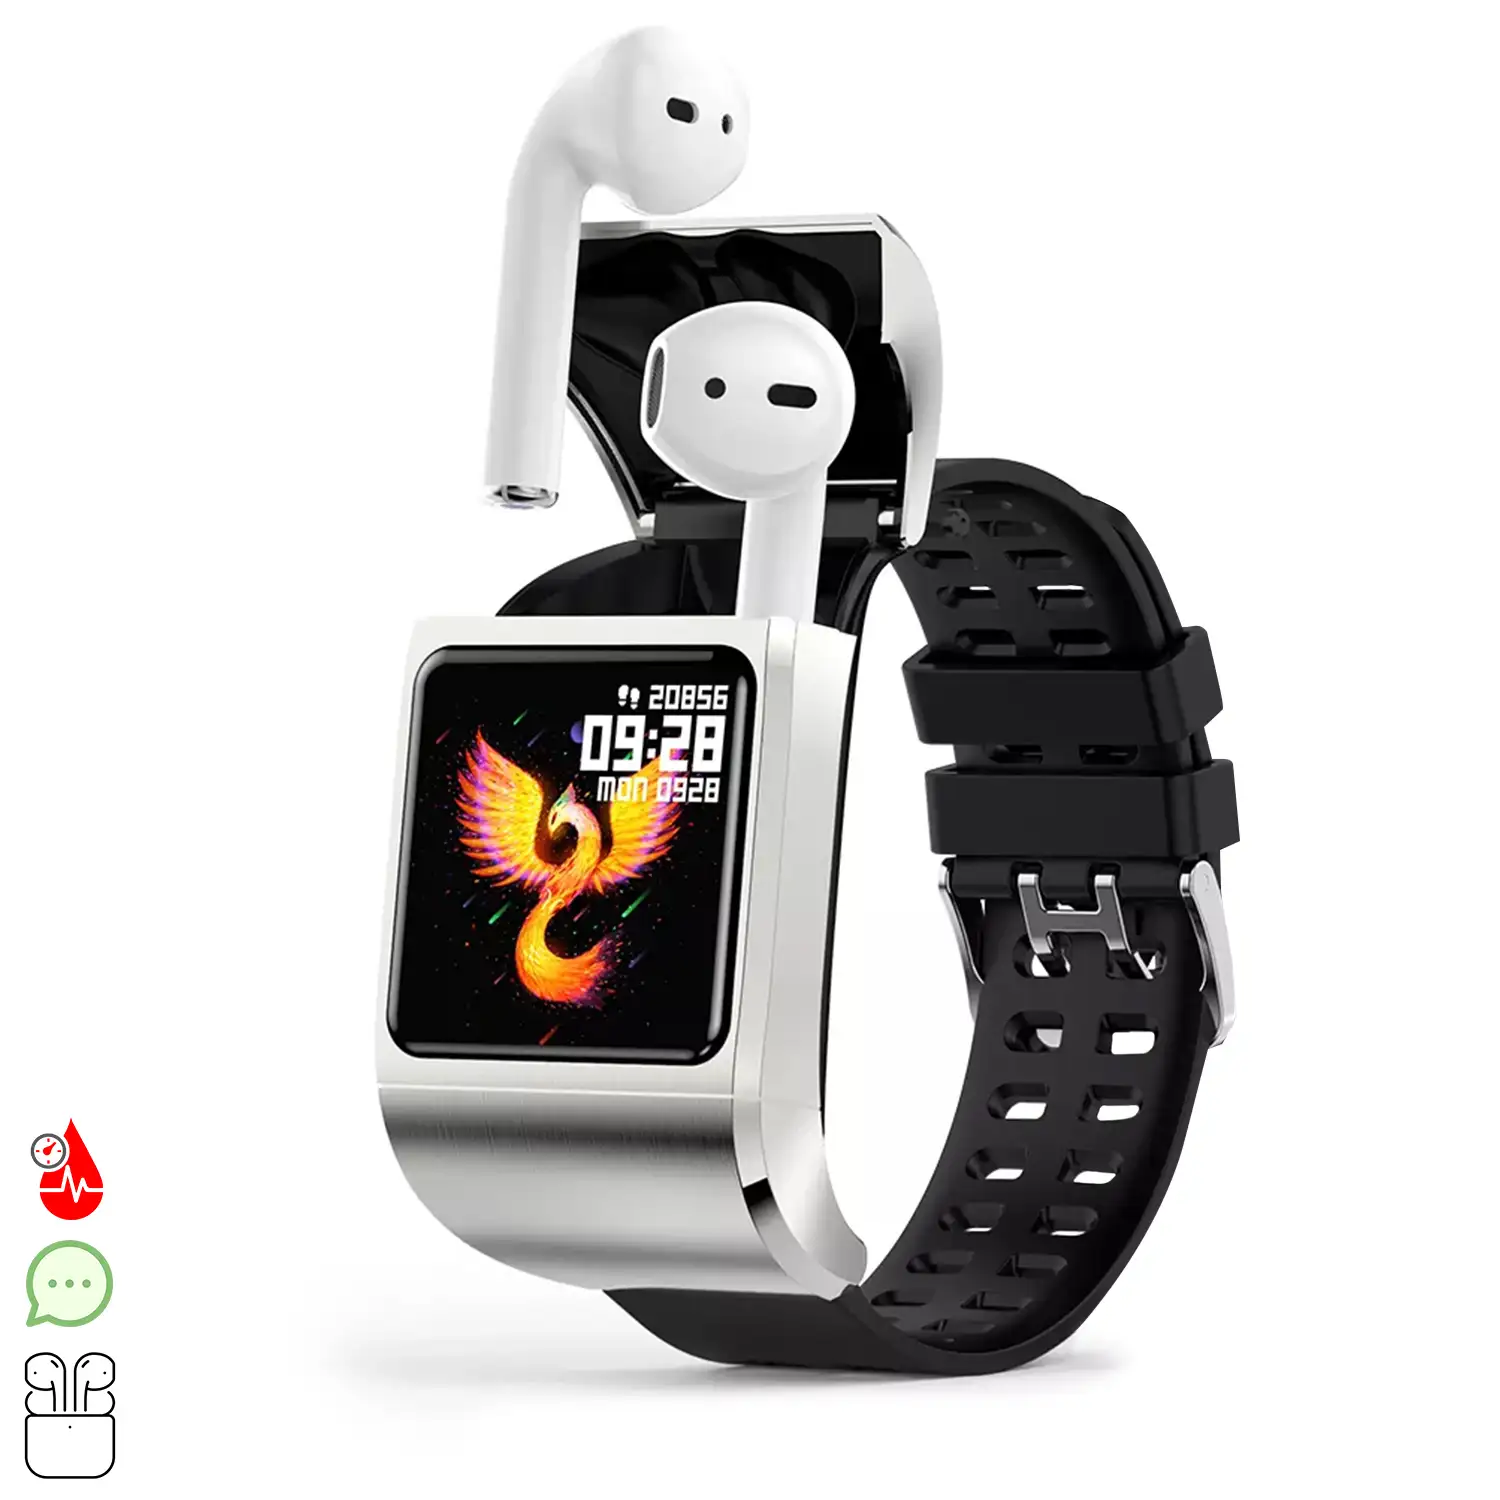 Smartwatch G36 Pro con auriculares Bluetooth 5.0 TWS integrados. Monitor de tensión y oxígeno en sangre; modo multideportivo.